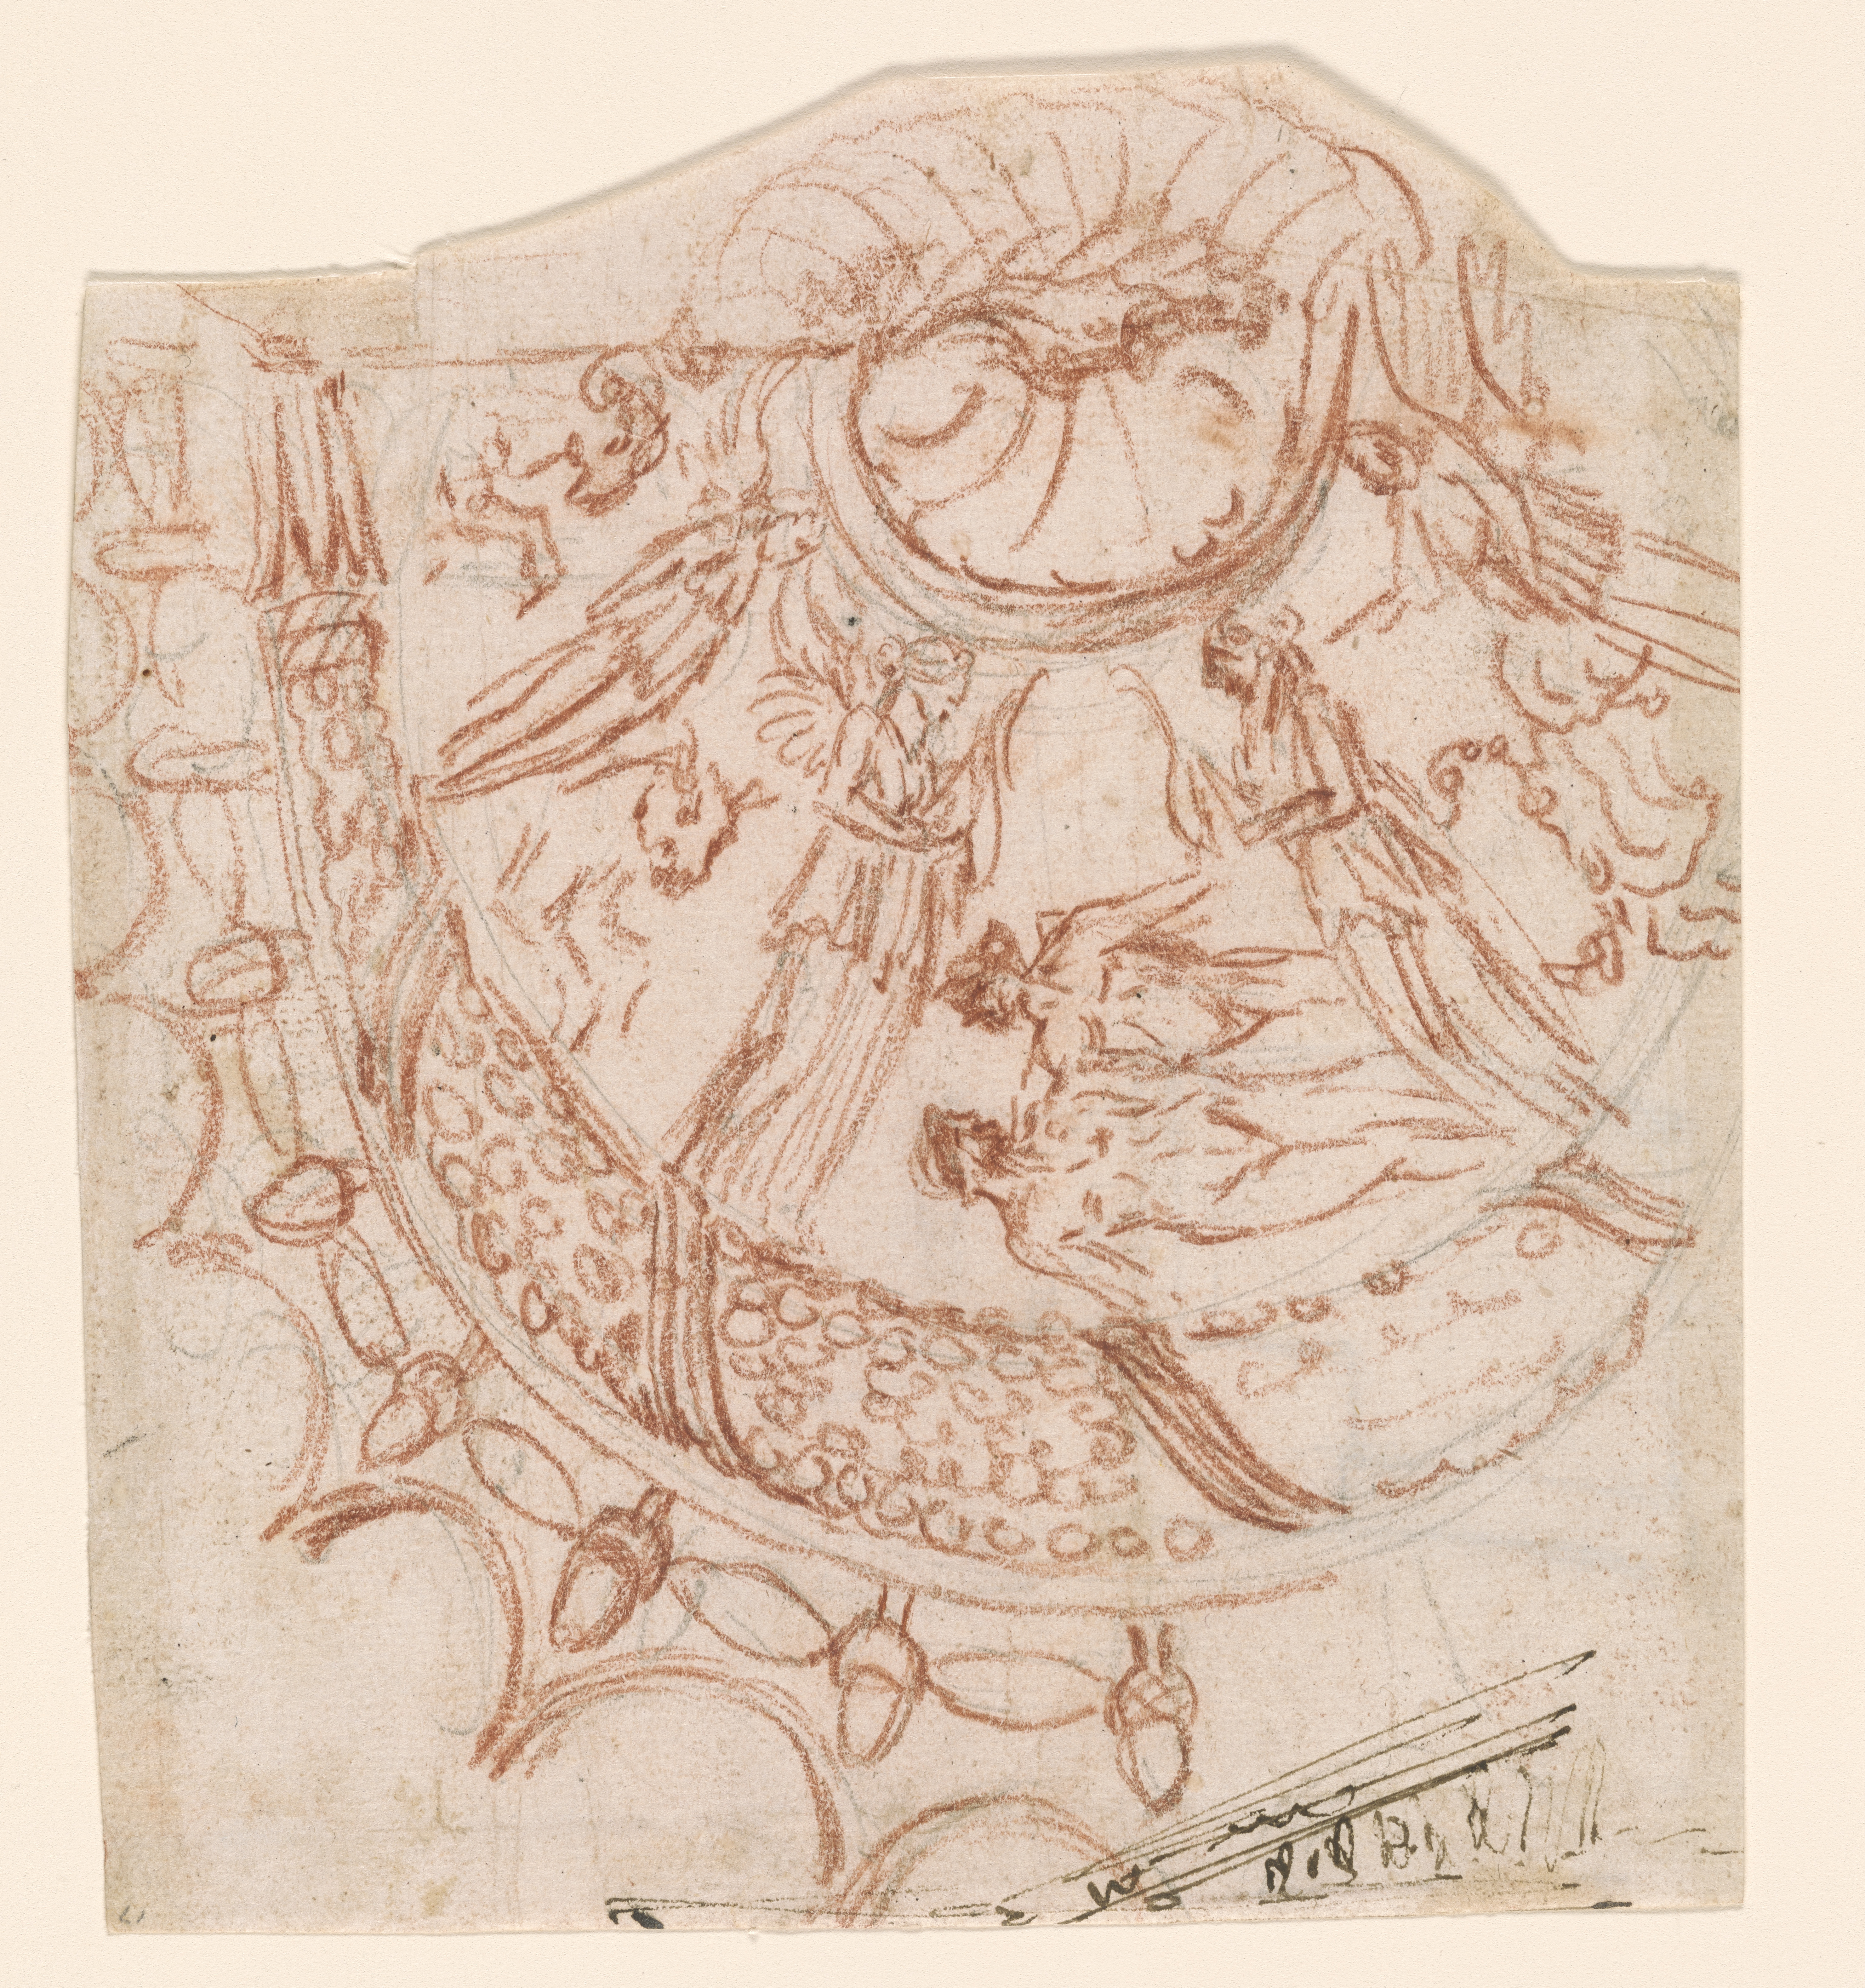 Zeichnung in roter Kreide. Darstellung des Brustornaments der Statue de Artemisia von Ephesos